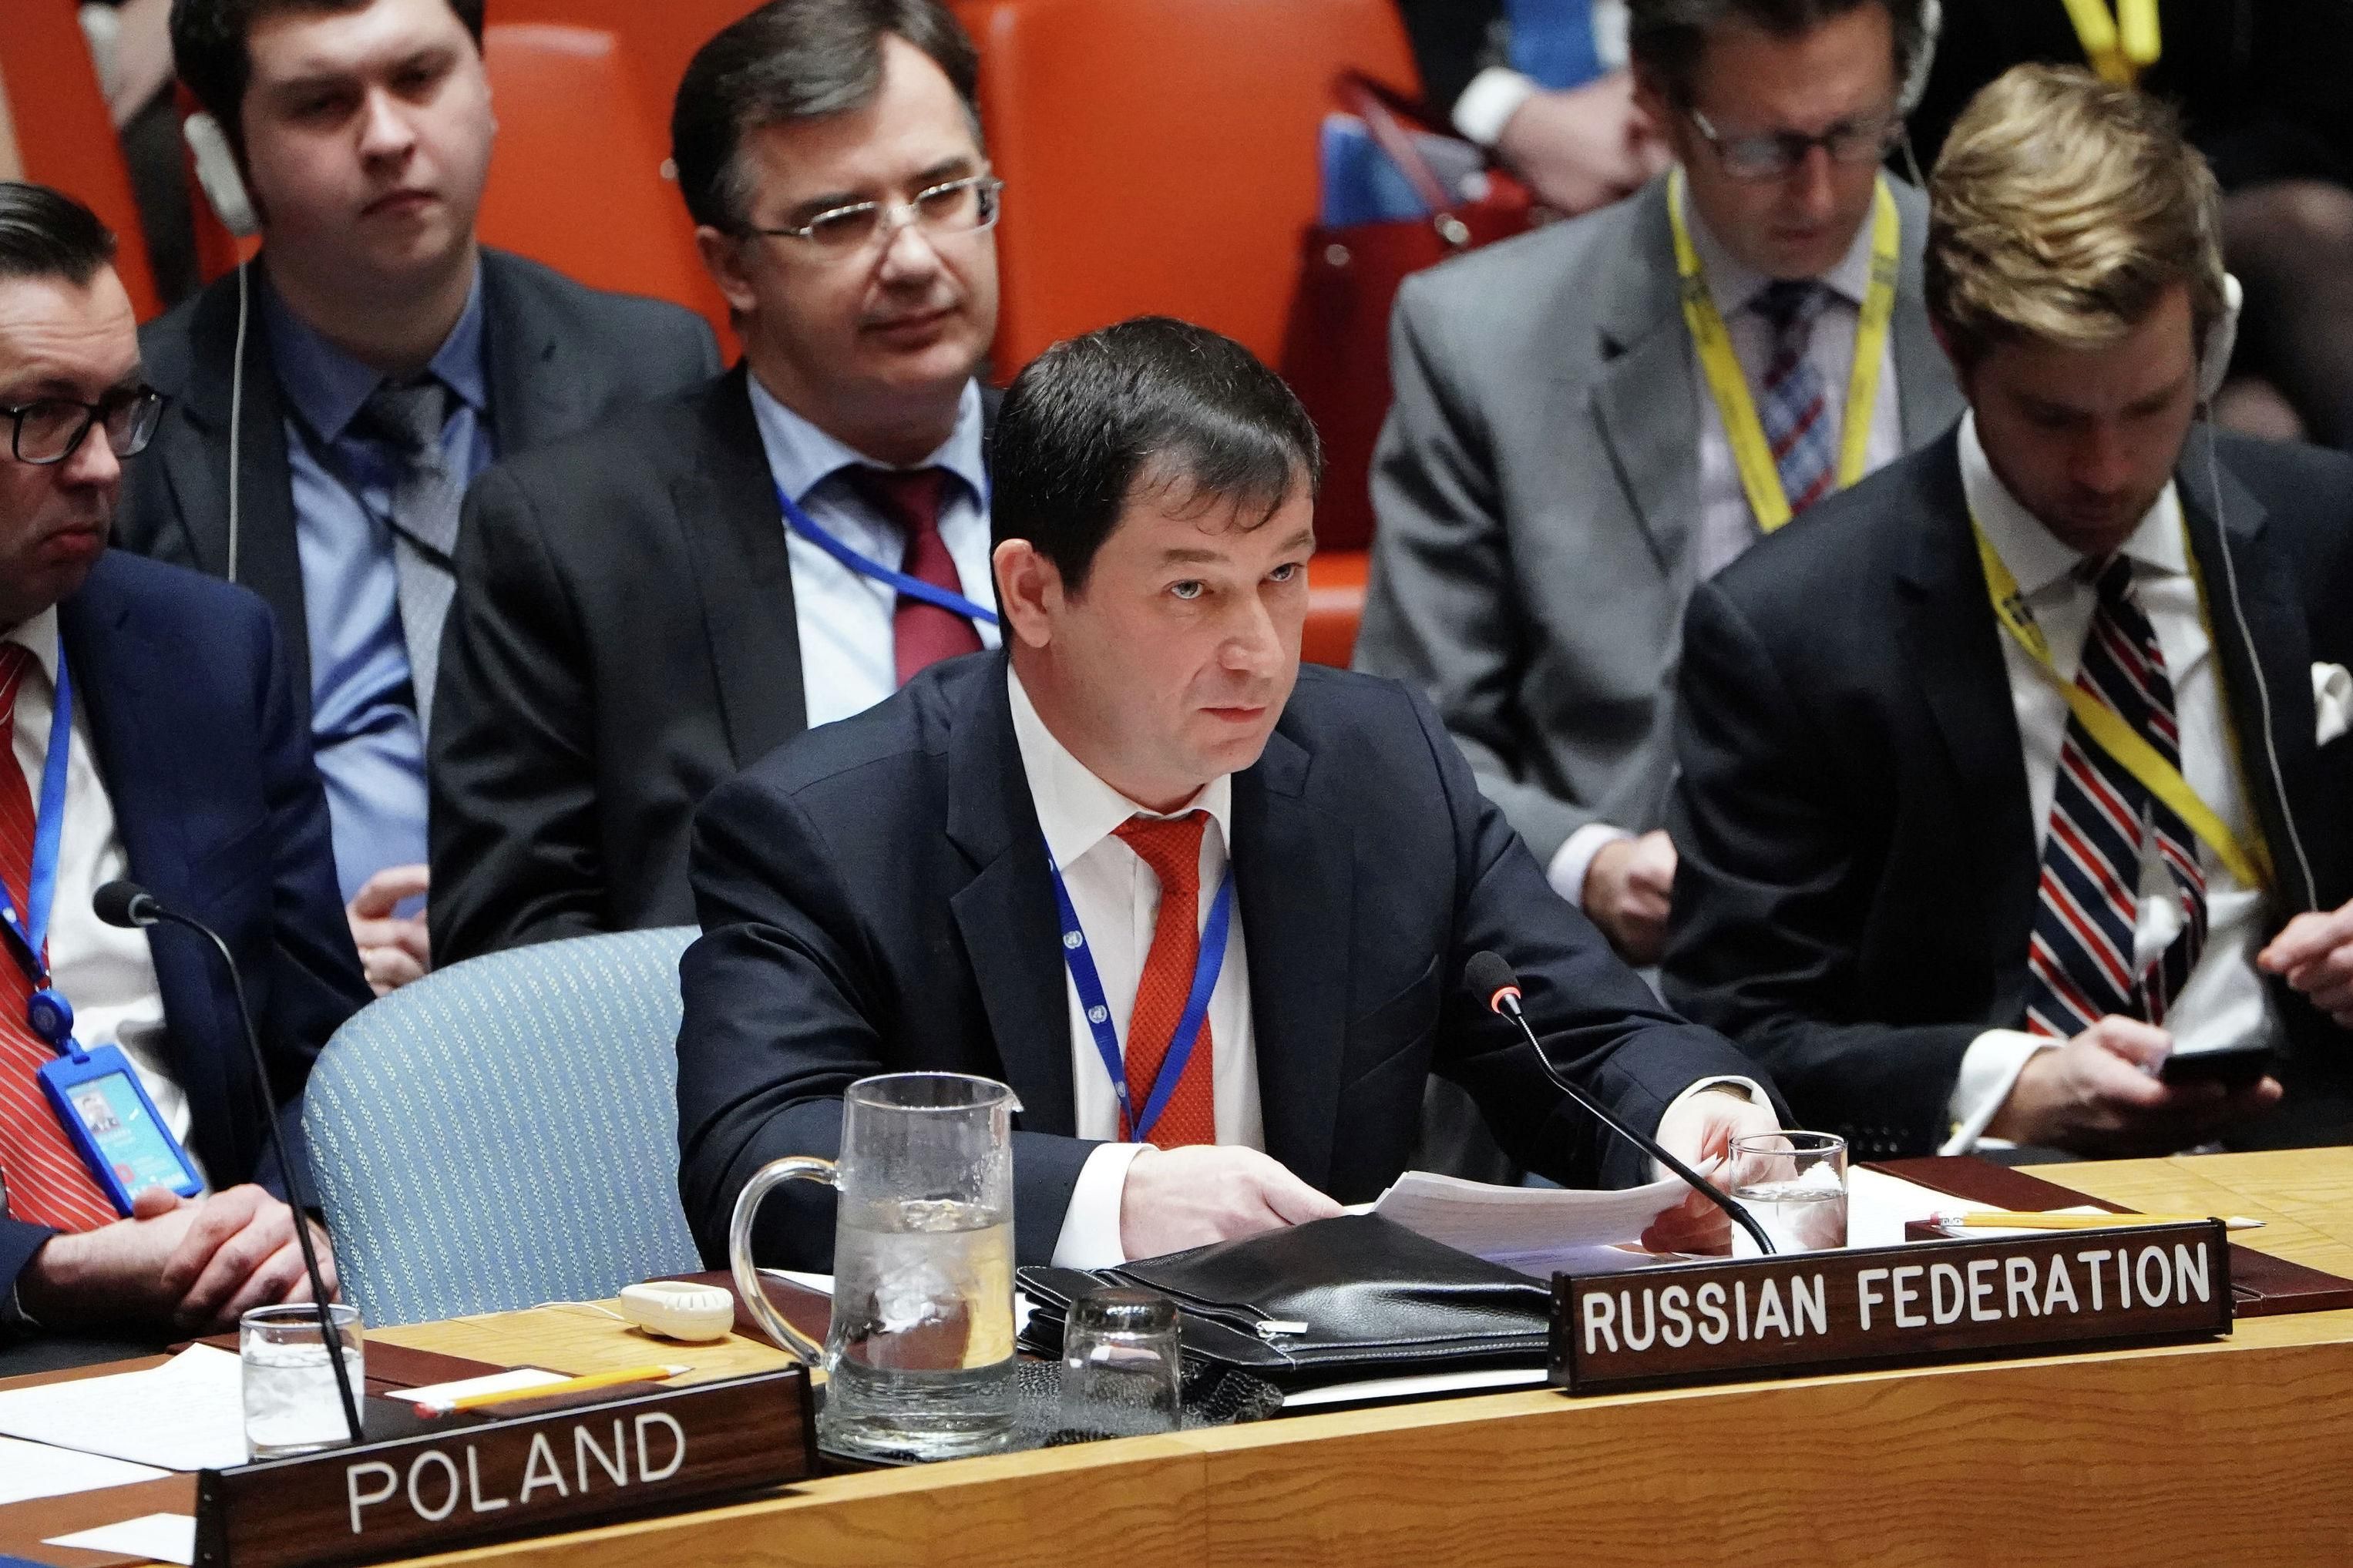 © REUTERS / CARLO ALLEGRI Первый заместитель постпреда России при ООН Дмитрий Полянский